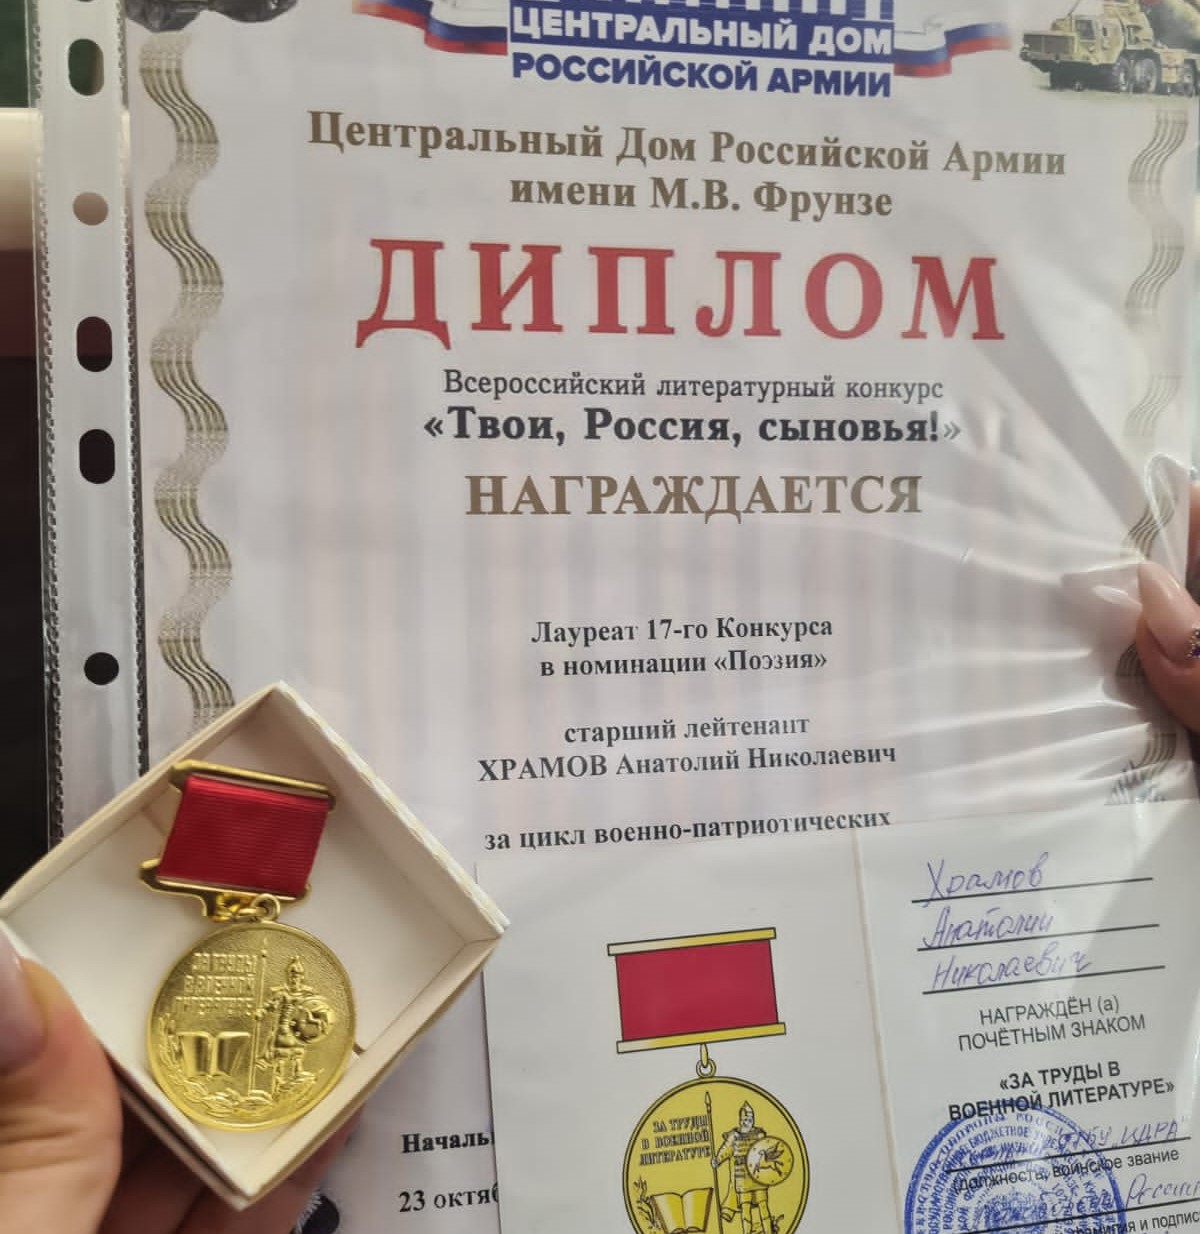 Якутянин стал лауреатом всероссийского литературного конкурса «Твои, Россия, сыновья!»